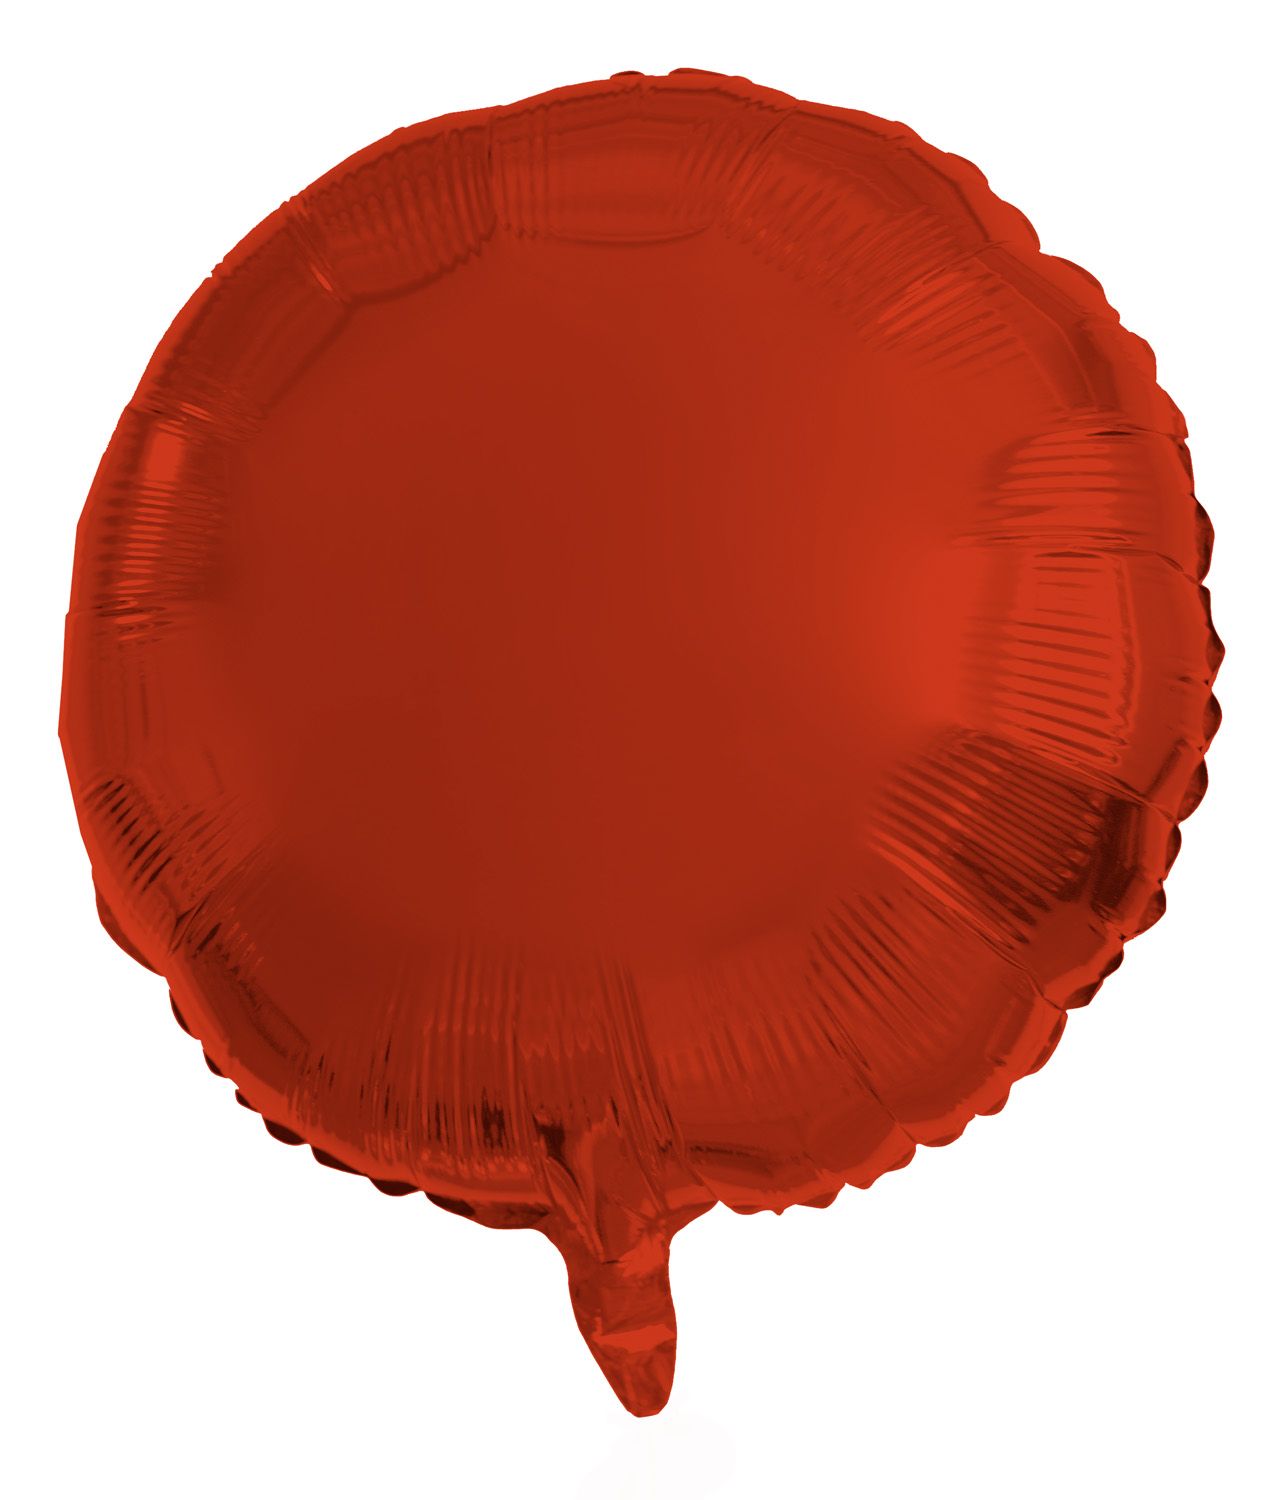 Folieballon metallic rood rond